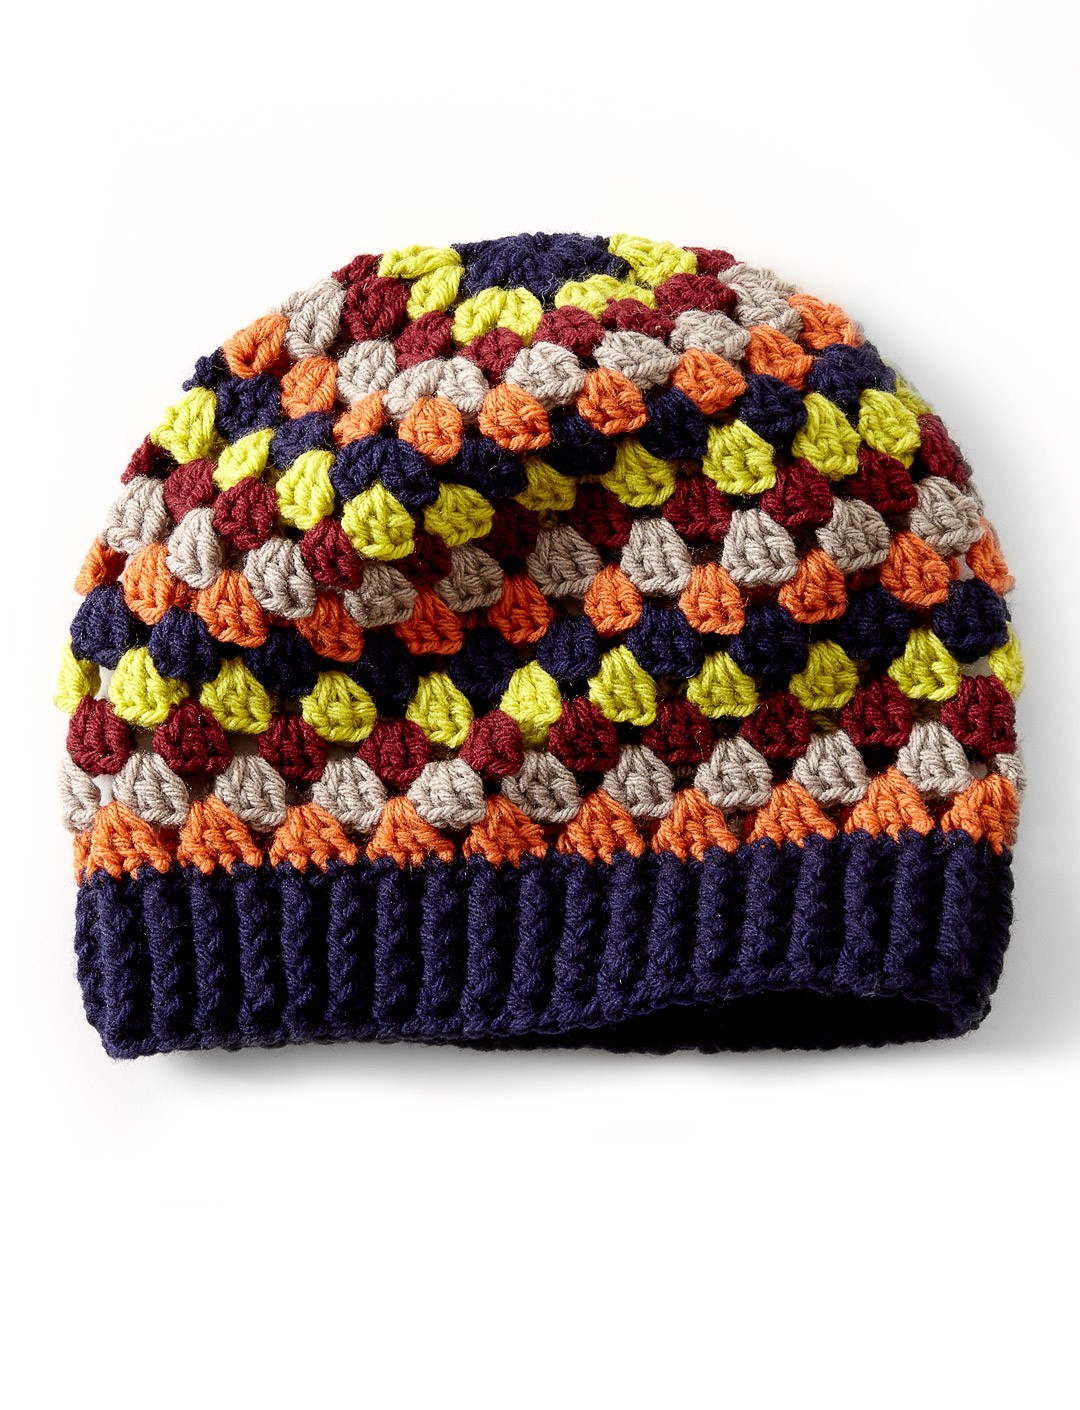 Crochet Striped Beanie Pattern Crochet Granny Stripes Hat Tutorial The Crochet Crowd